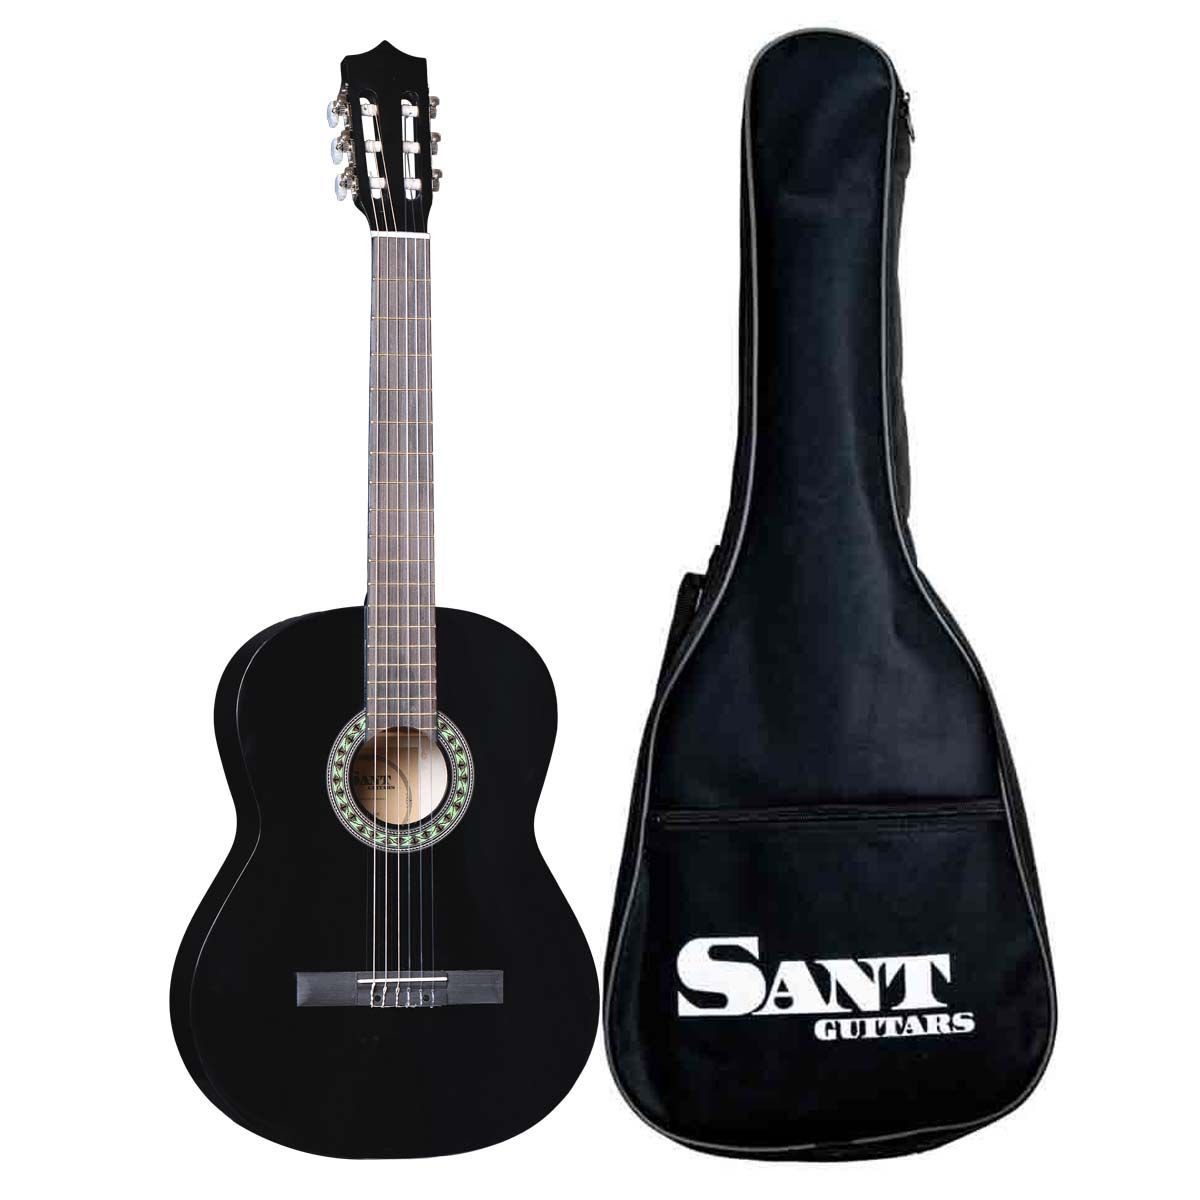 Køb Sant Guitars CL-50-BK - Spansk guitar - Sort - Pris 895.00 kr.